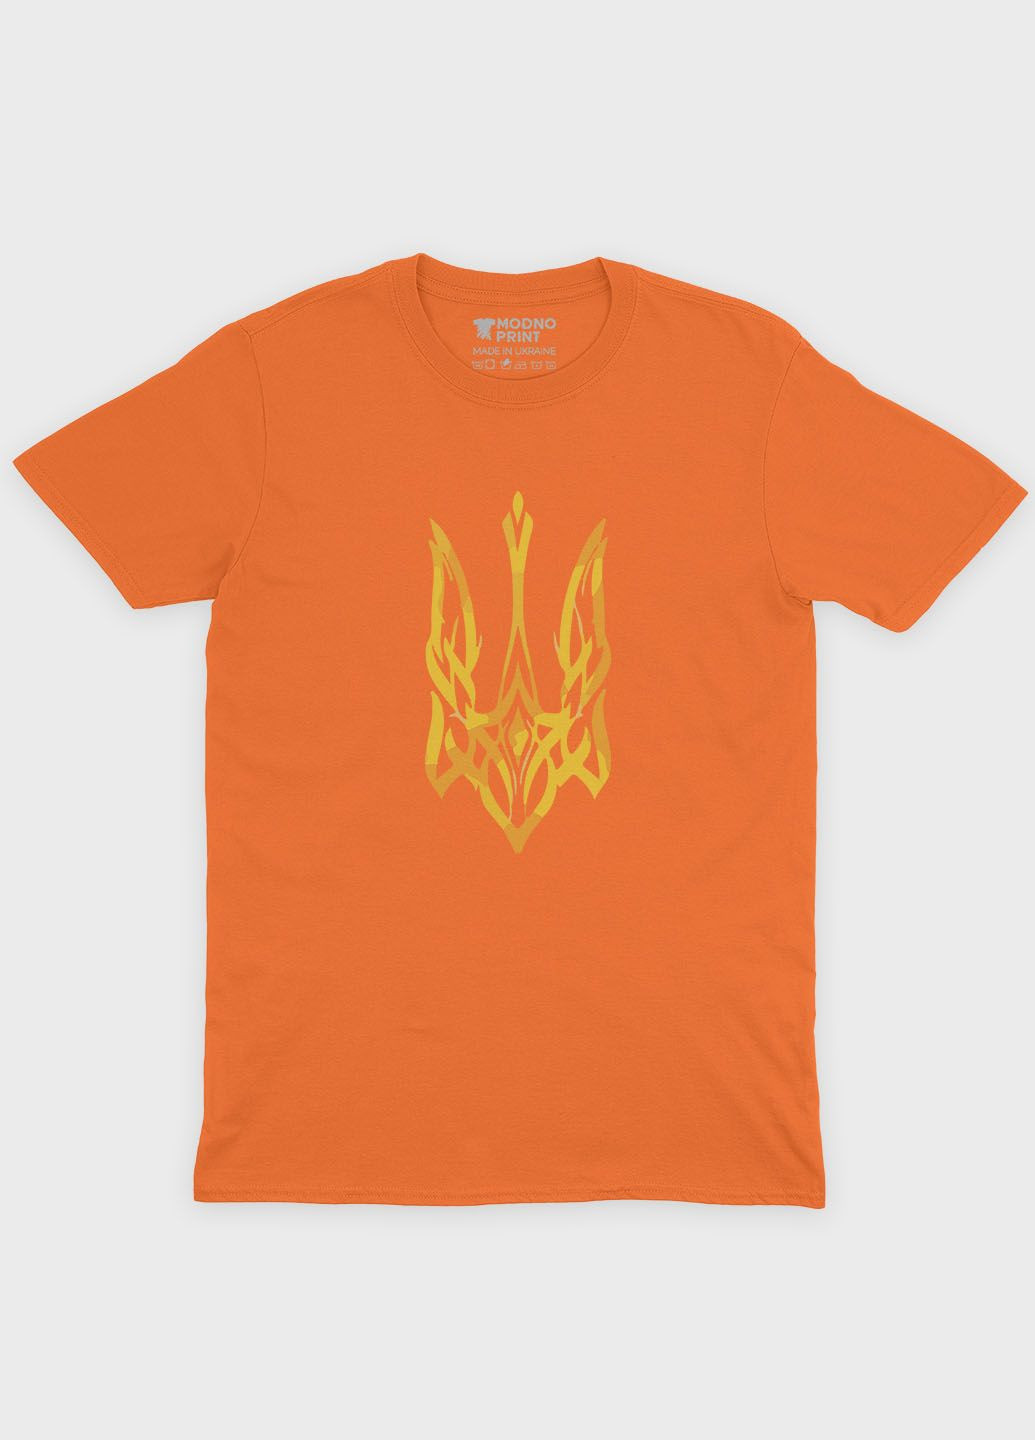 Оранжевая демисезонная футболка для мальчика с патриотическим принтом гербтризуб (ts001-1-ora-005-1-012-b) Modno